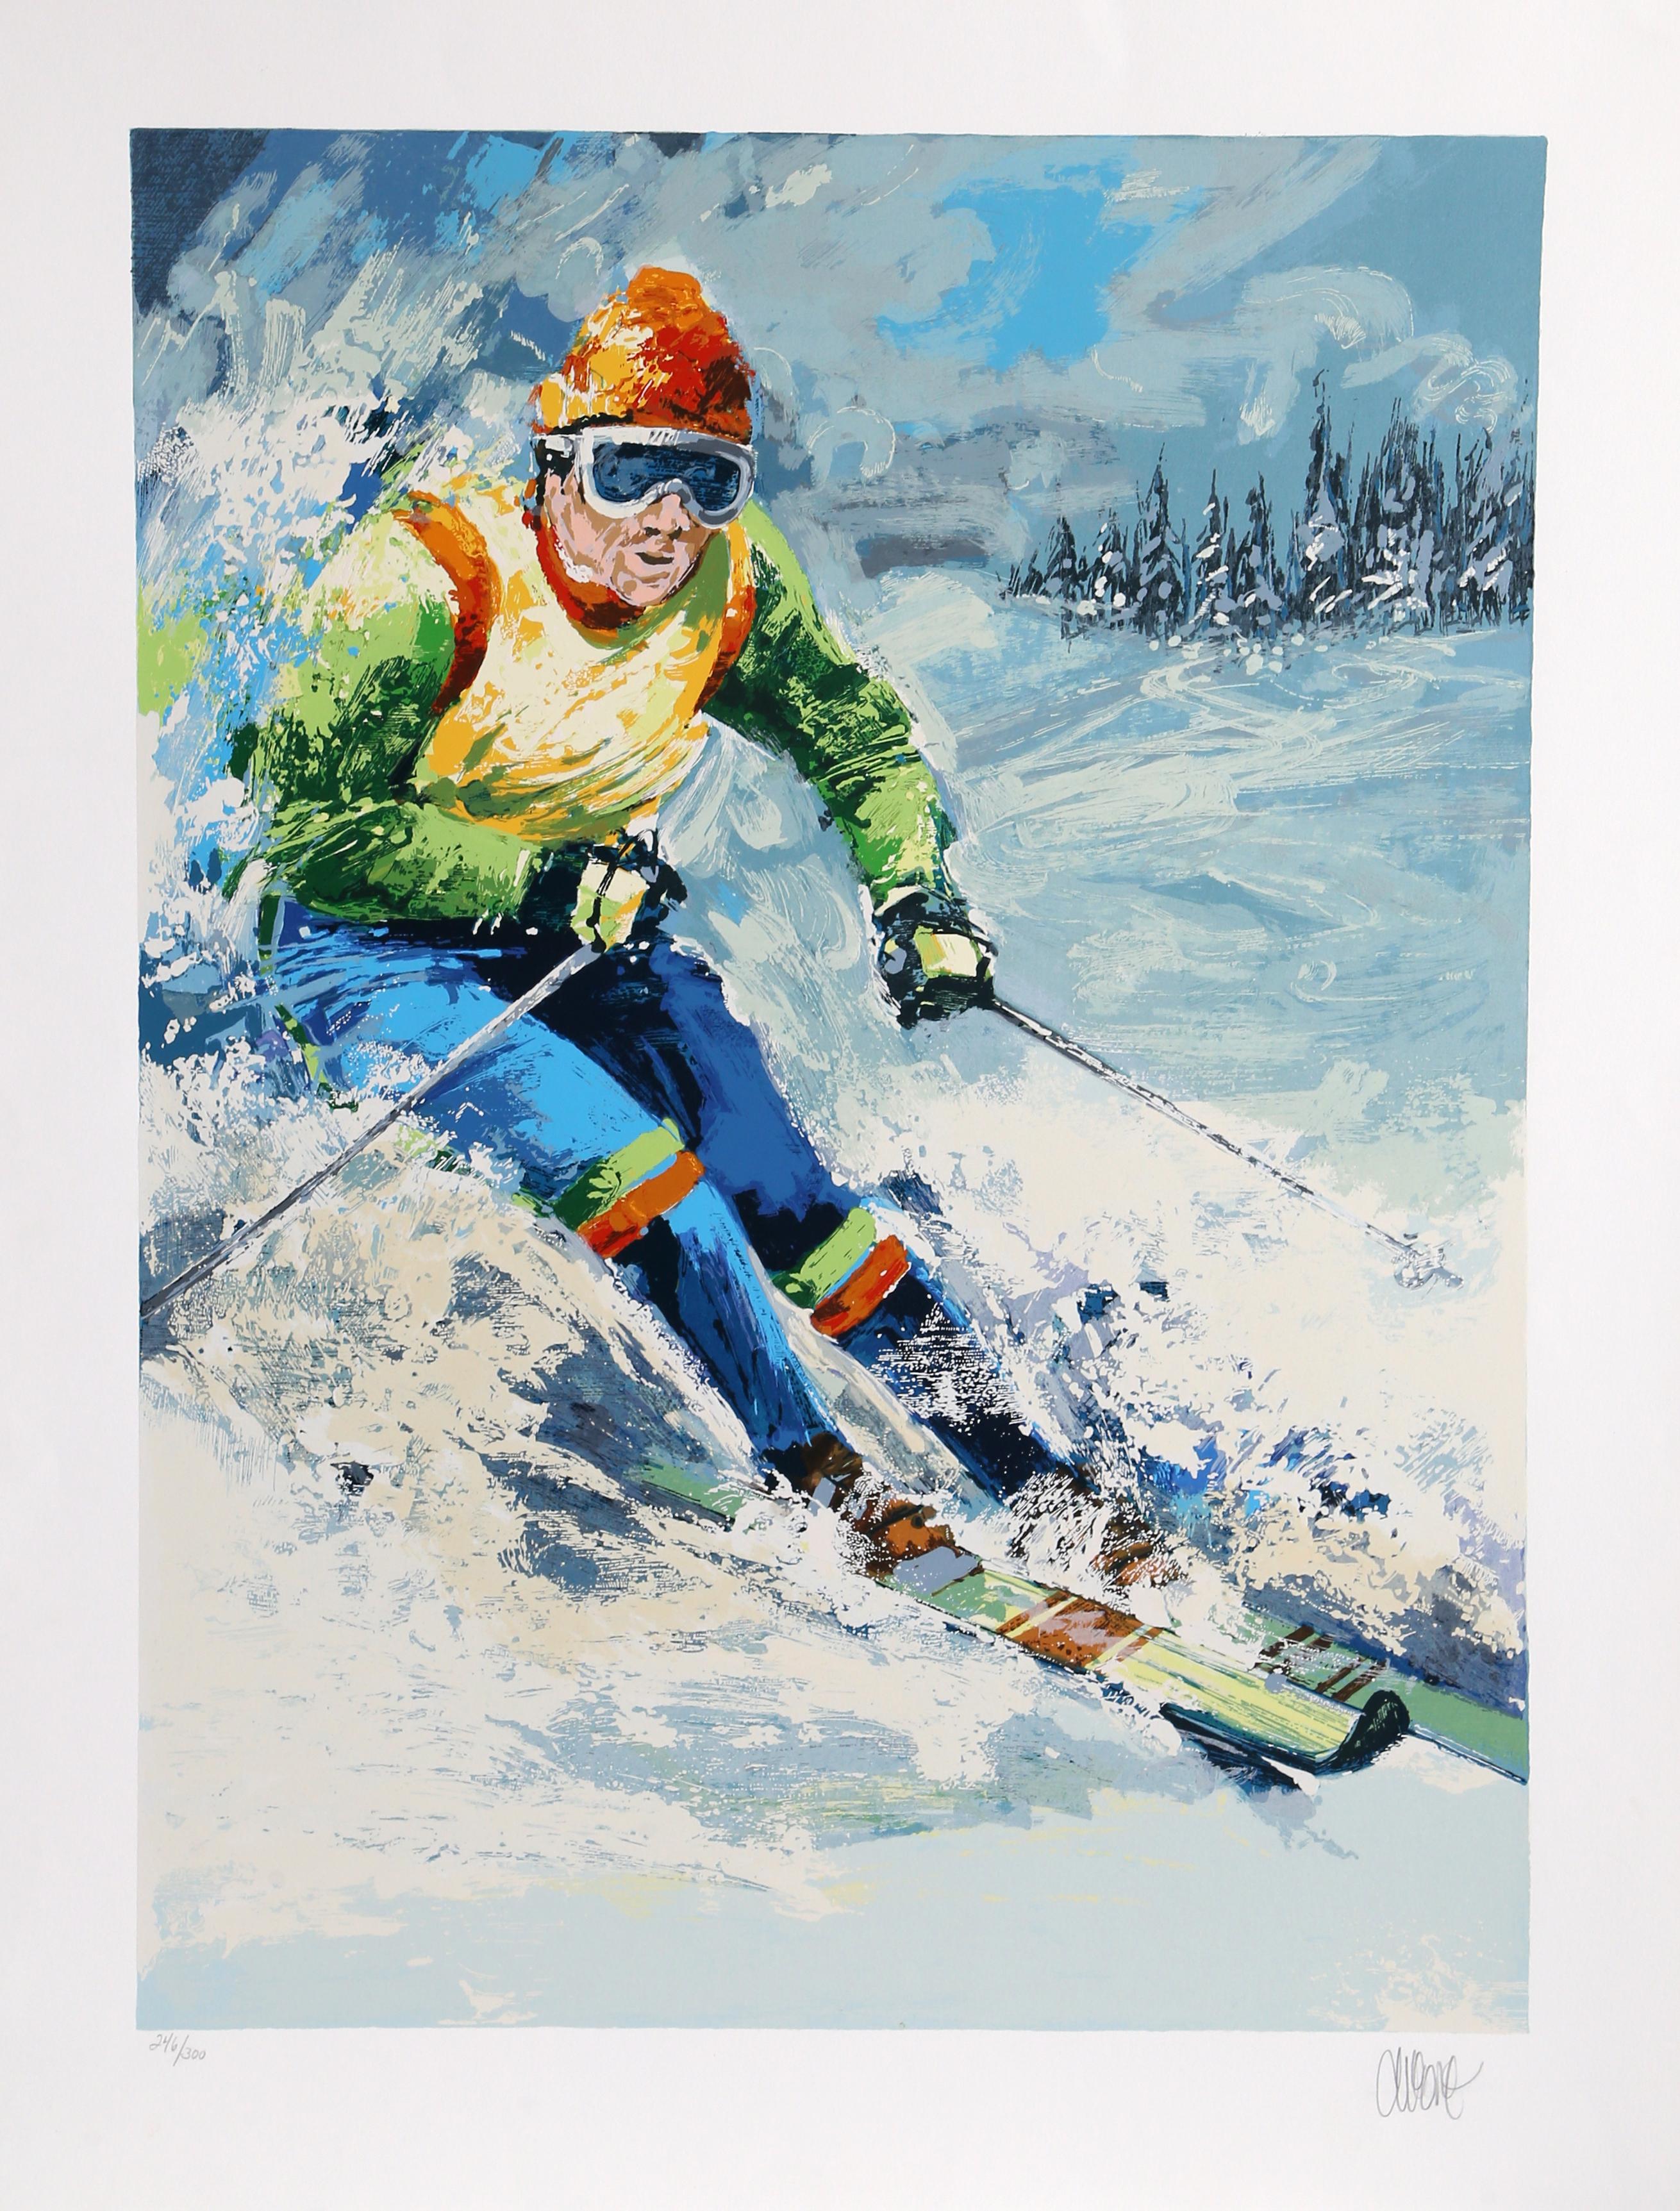 Skifahrer I
Wayland Moore, Amerikaner (1935)
Datum: ca. 1980
Siebdruck, signiert und nummeriert mit Bleistift
Auflage von 246/300
Bildgröße: 29,5 x 21 Zoll
Größe: 36 x 27,5 Zoll (91,44 x 69,85 cm)